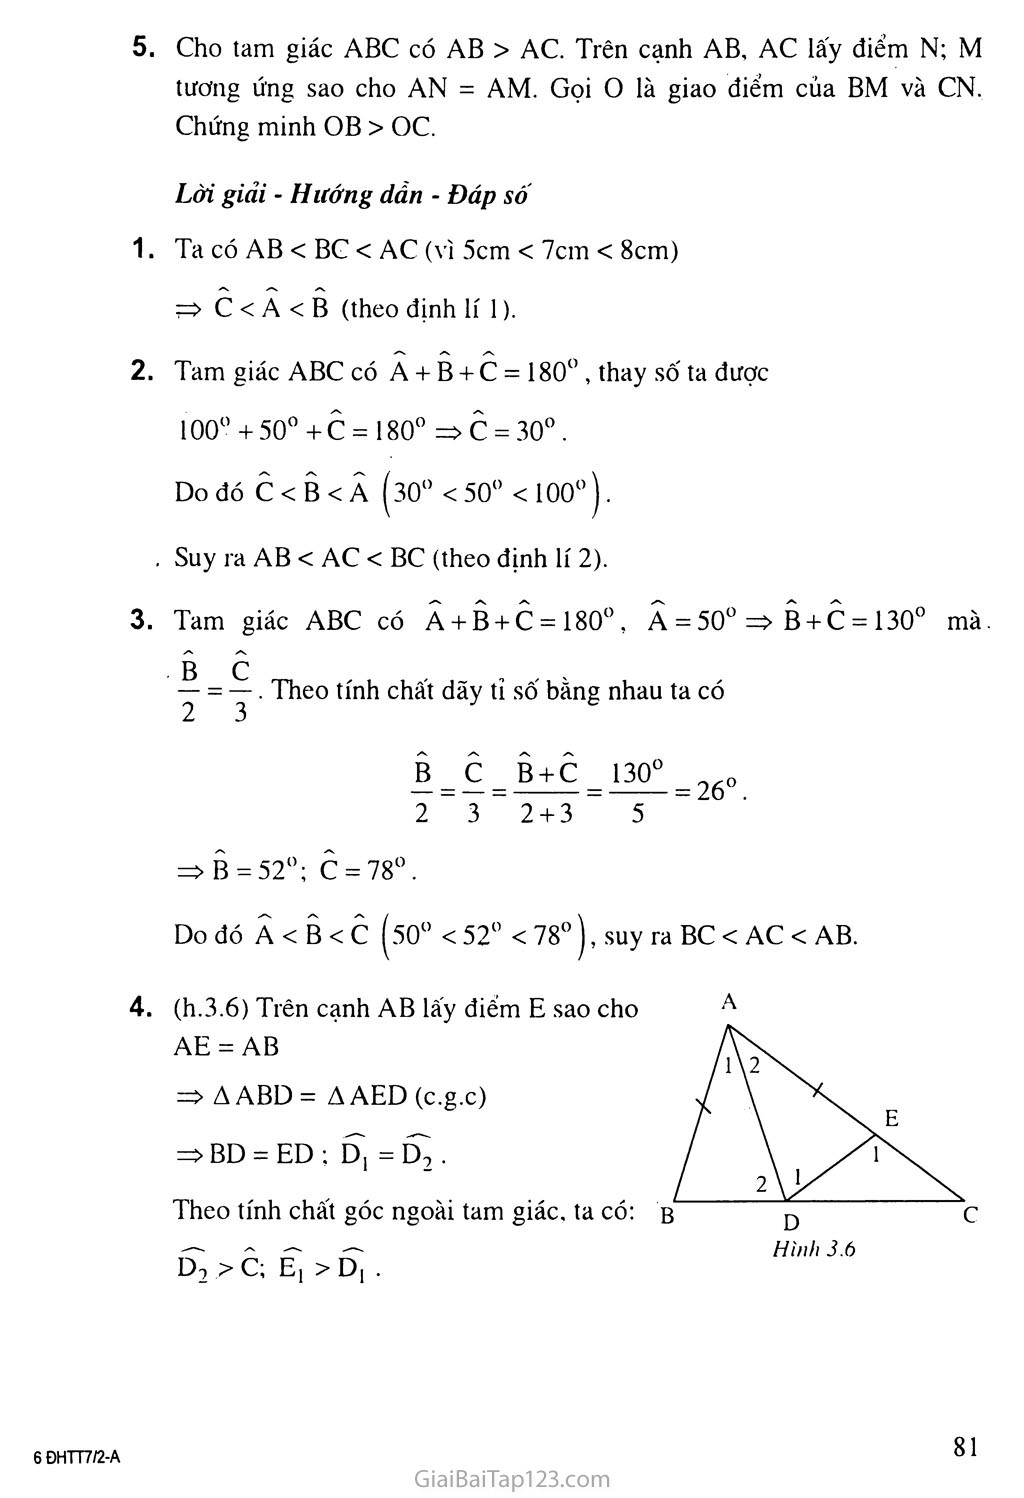 Bài 1. Quan hệ giữa góc và cạnh đối diện trong một tam giác trang 5